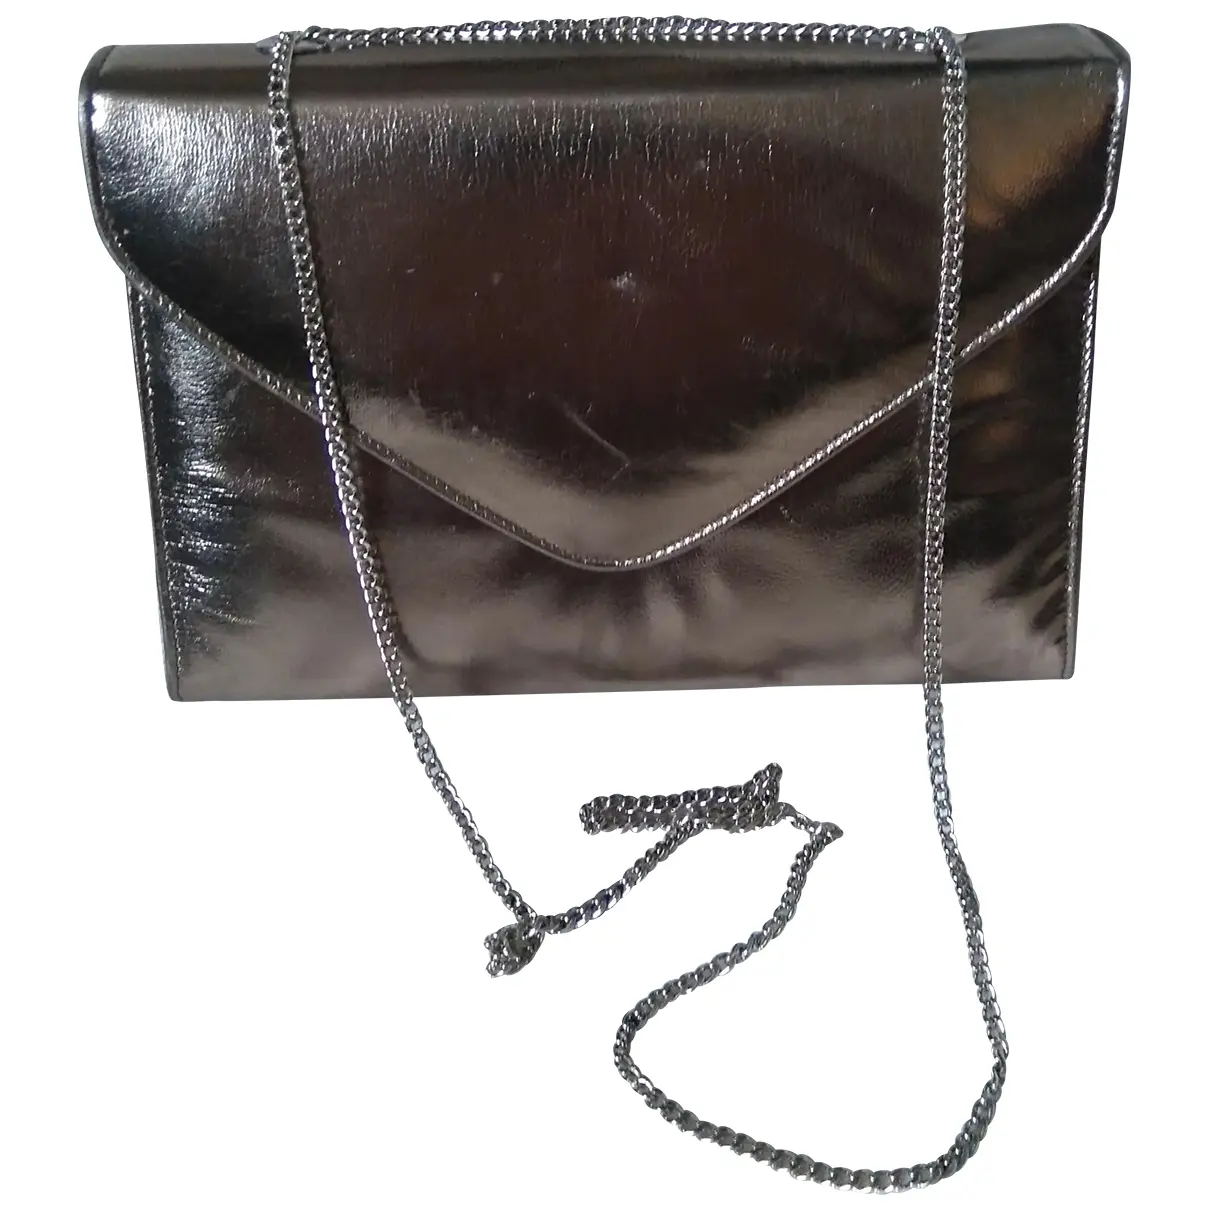 Leather handbag Gina